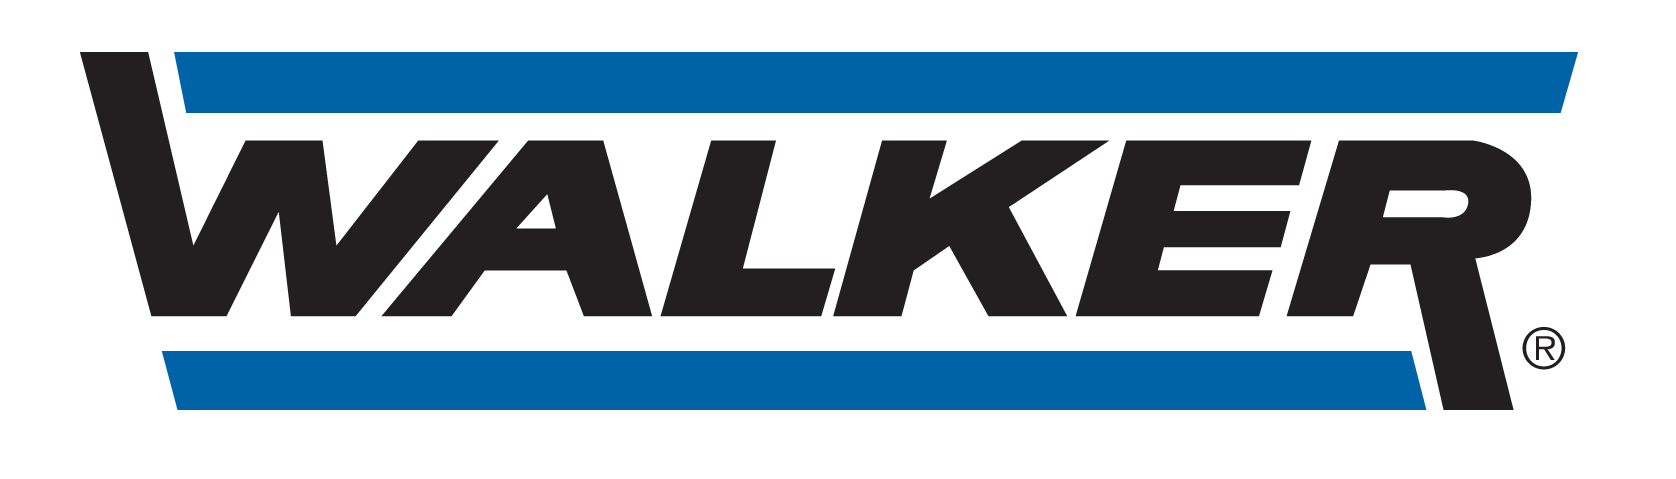 LAURIS AUTO SERVICES - logo Walker